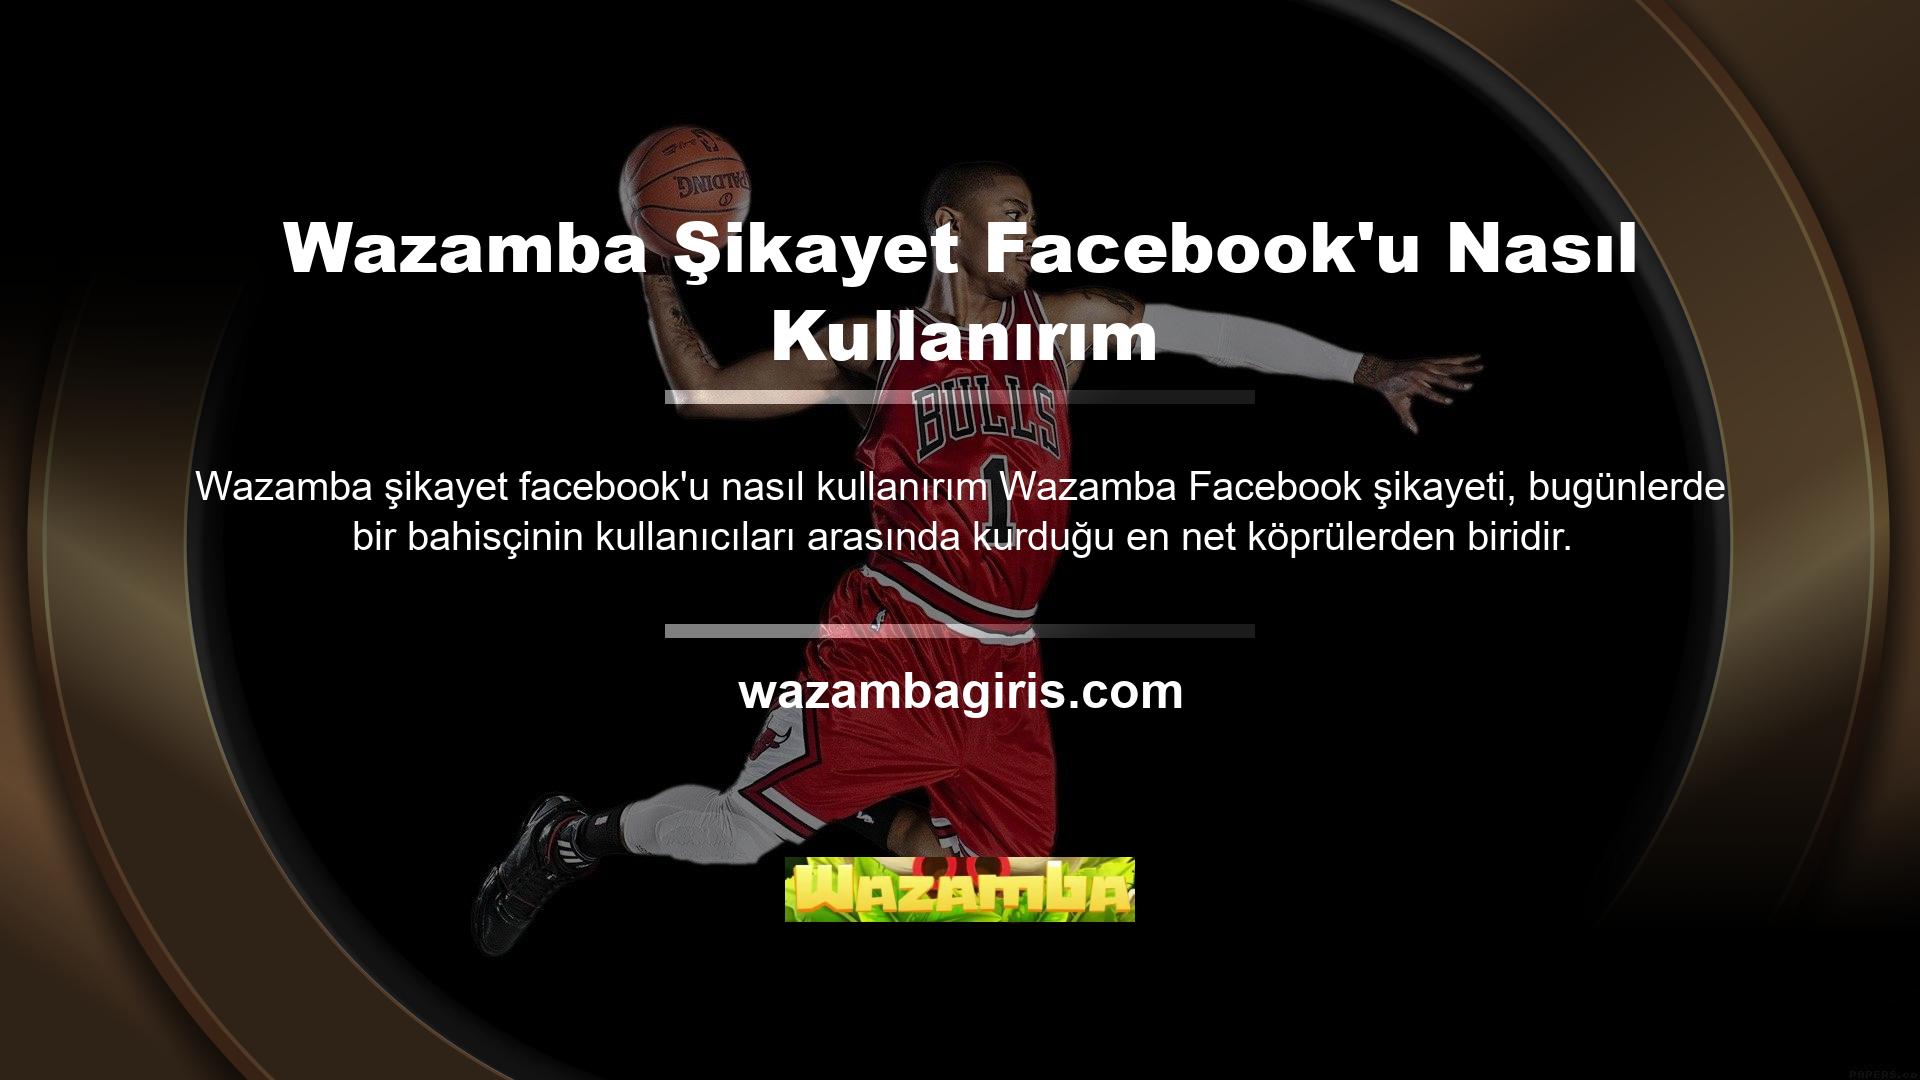 Wazamba, günümüzde dünyanın en çok kullanılan platformu olarak da bilinen Facebook'un özellikle sosyal medya hesap adresleri aracılığıyla kullanıcı sayısını artırdığını ve canlı bahislerin potansiyel müşterilere erişimini genişletebileceğini söyledi